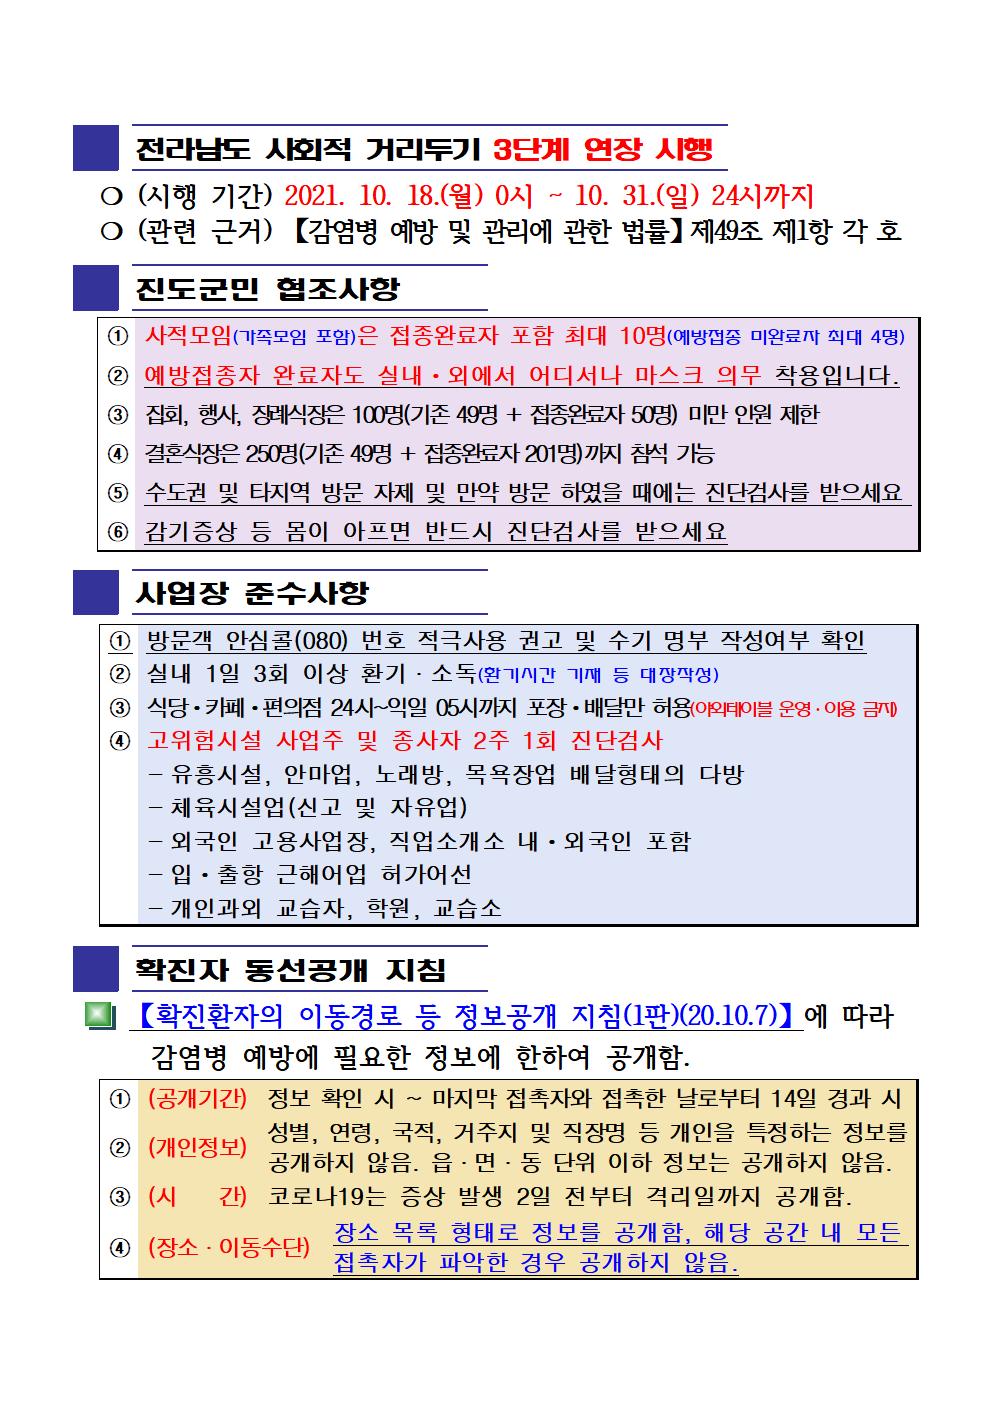 2021년 코로나19 대응 일일상황보고(10월 27일 24시 기준) 첨부#2